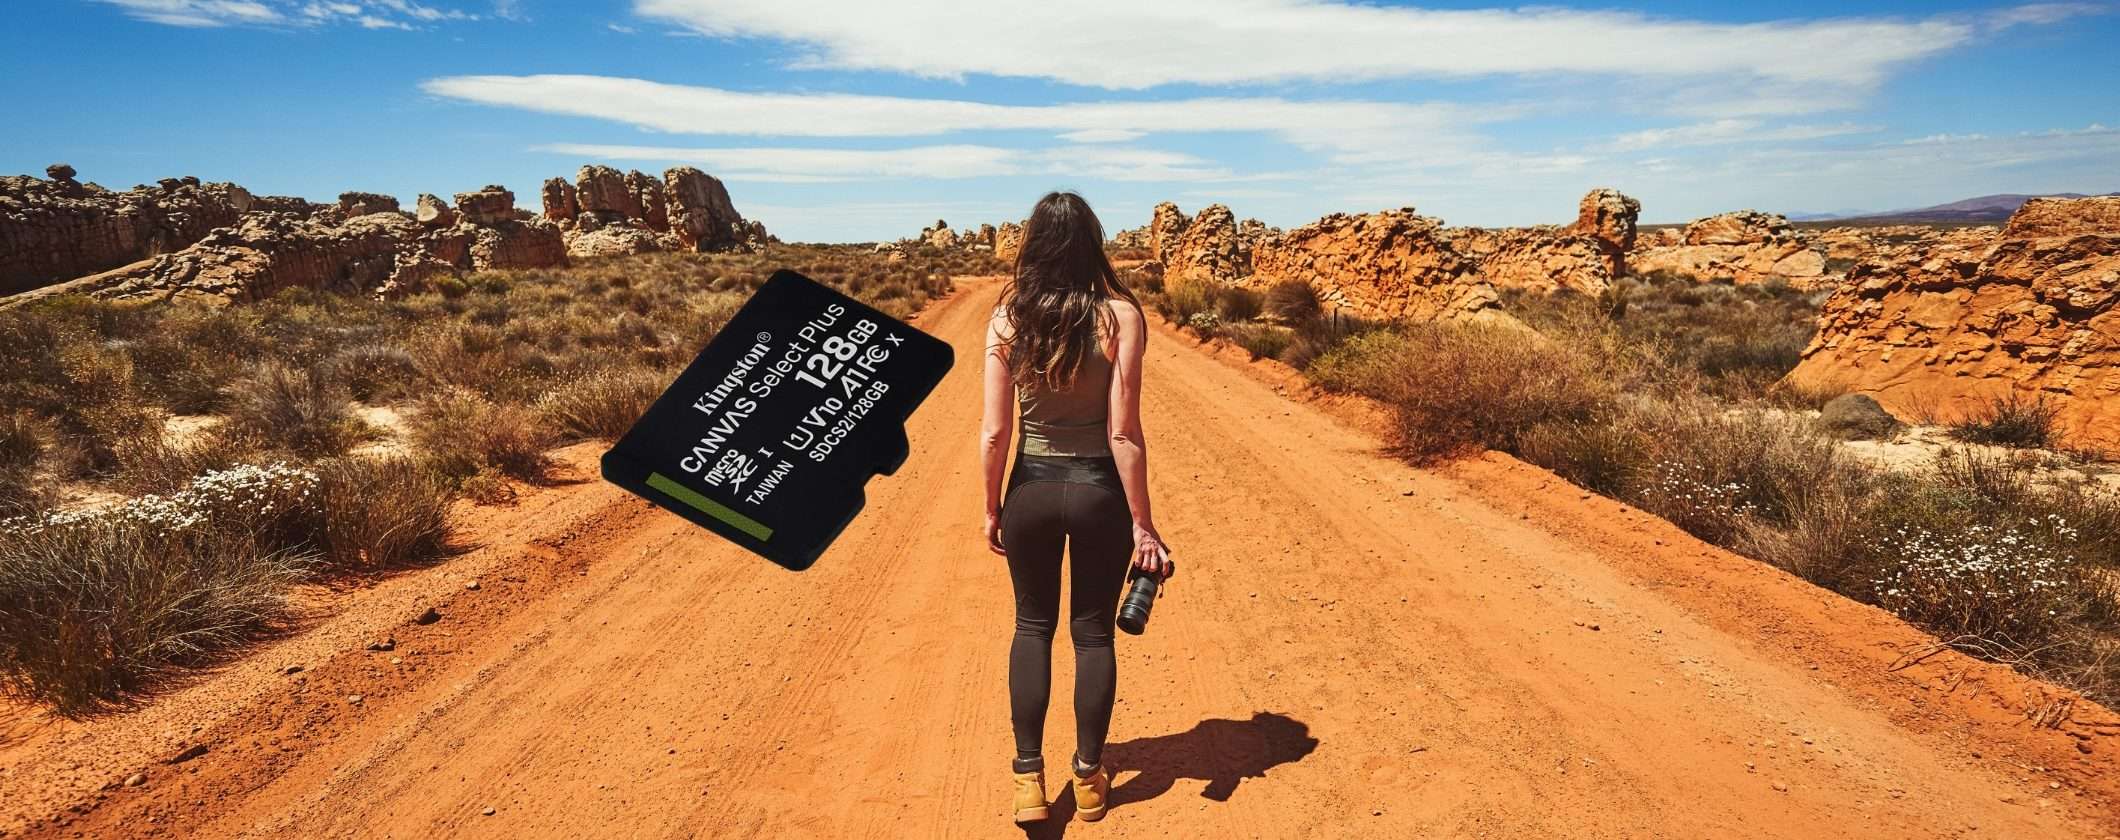 MicroSD 128GB Kingston. oltre ogni limite: solo 10€ su Amazon